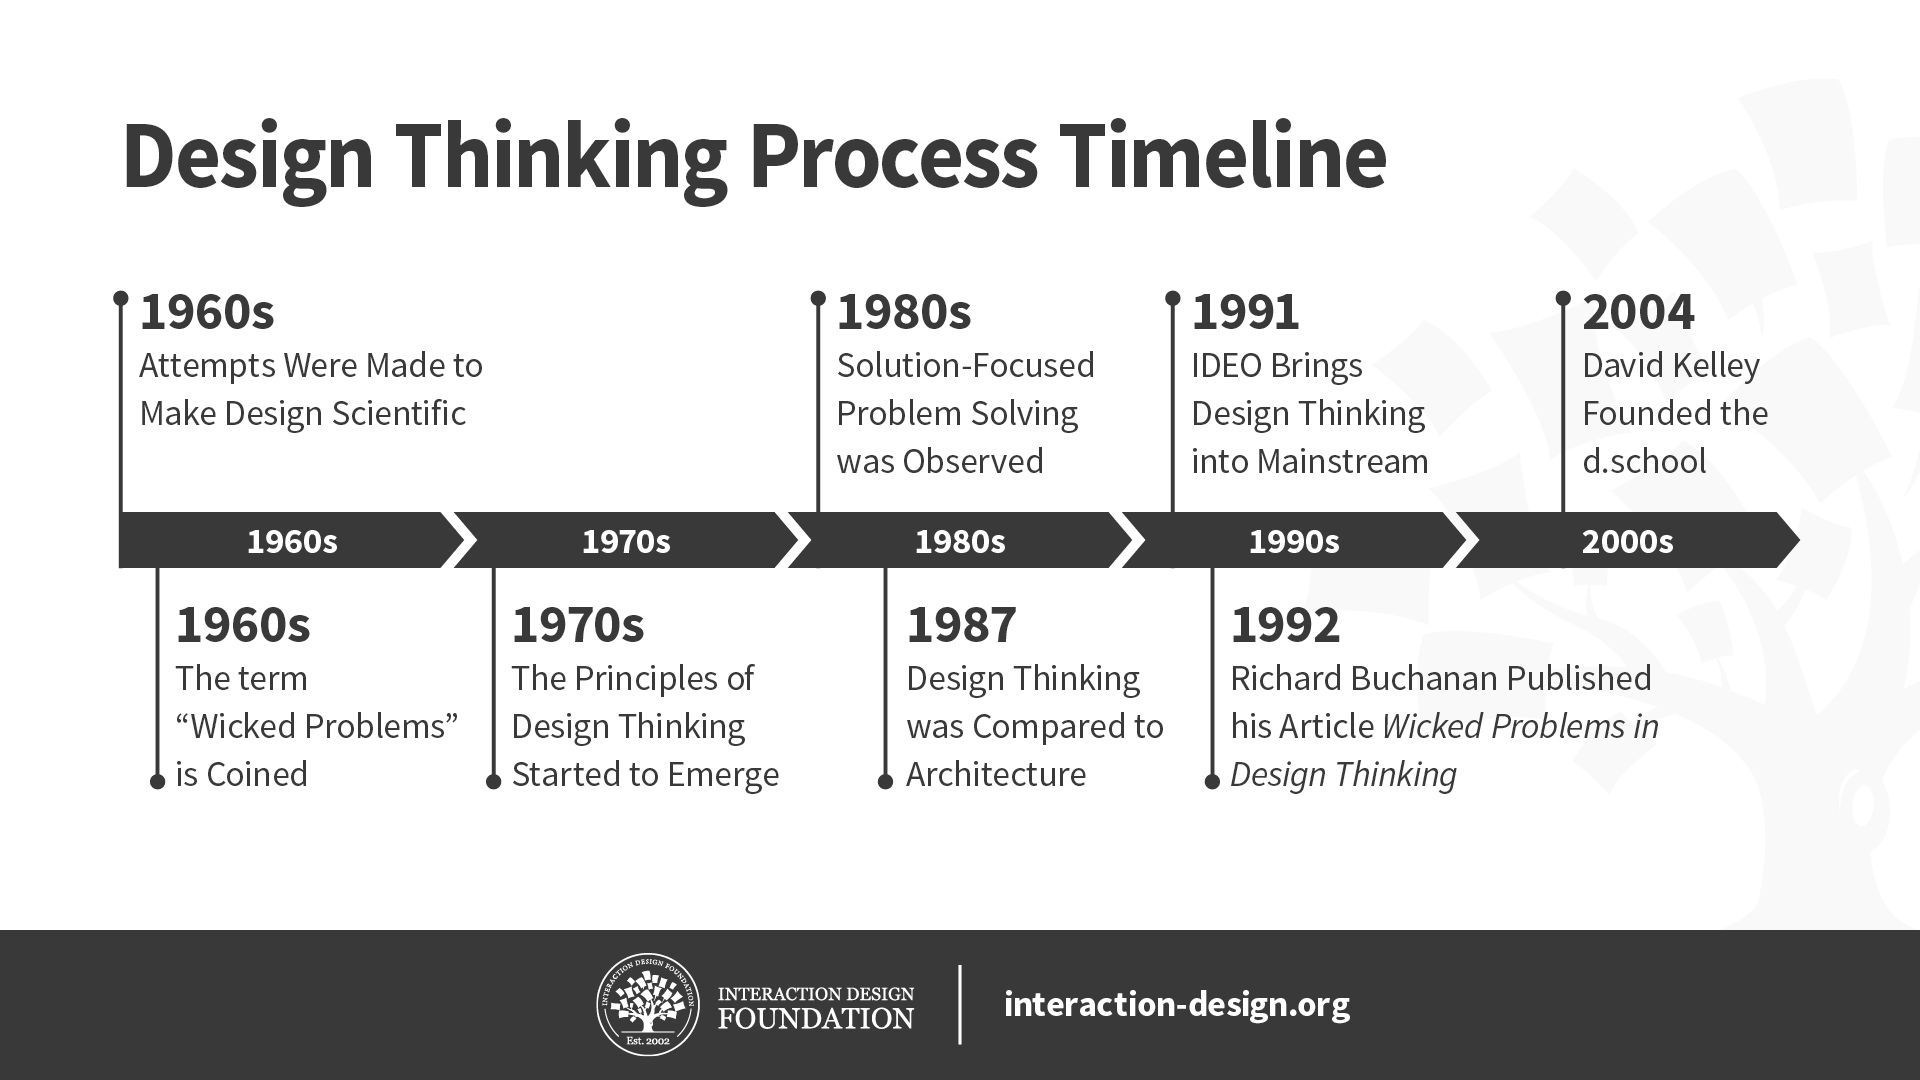 時間線總結了從 1960 年代到 2004 年設計思維歷史上的 8 個關鍵點。